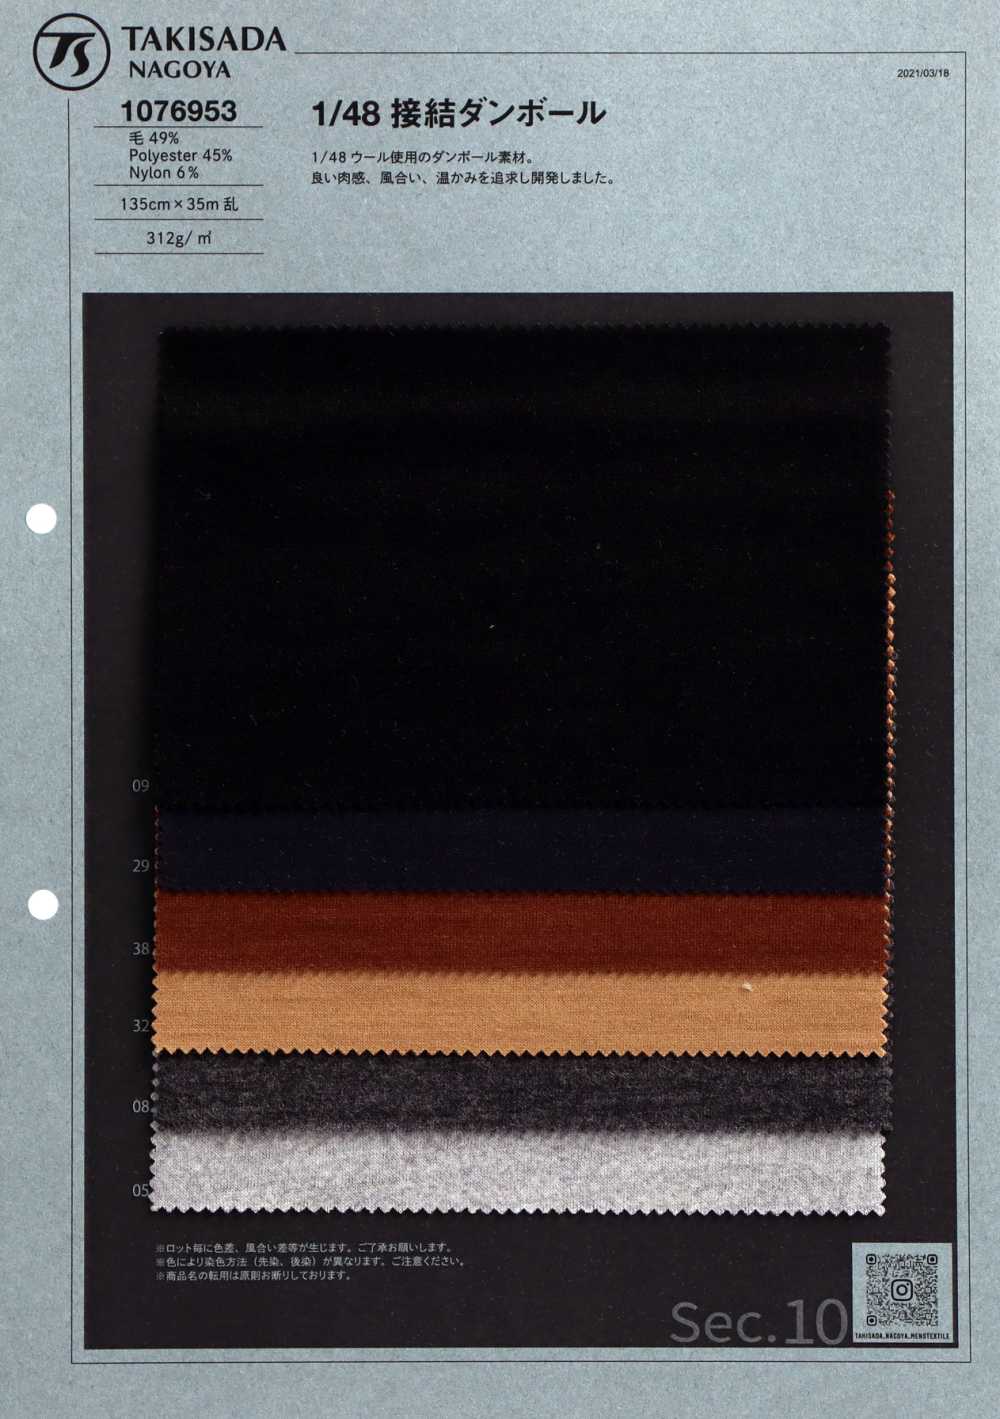 1076953 1/48 Double Knit[Textile / Fabric] Takisada Nagoya